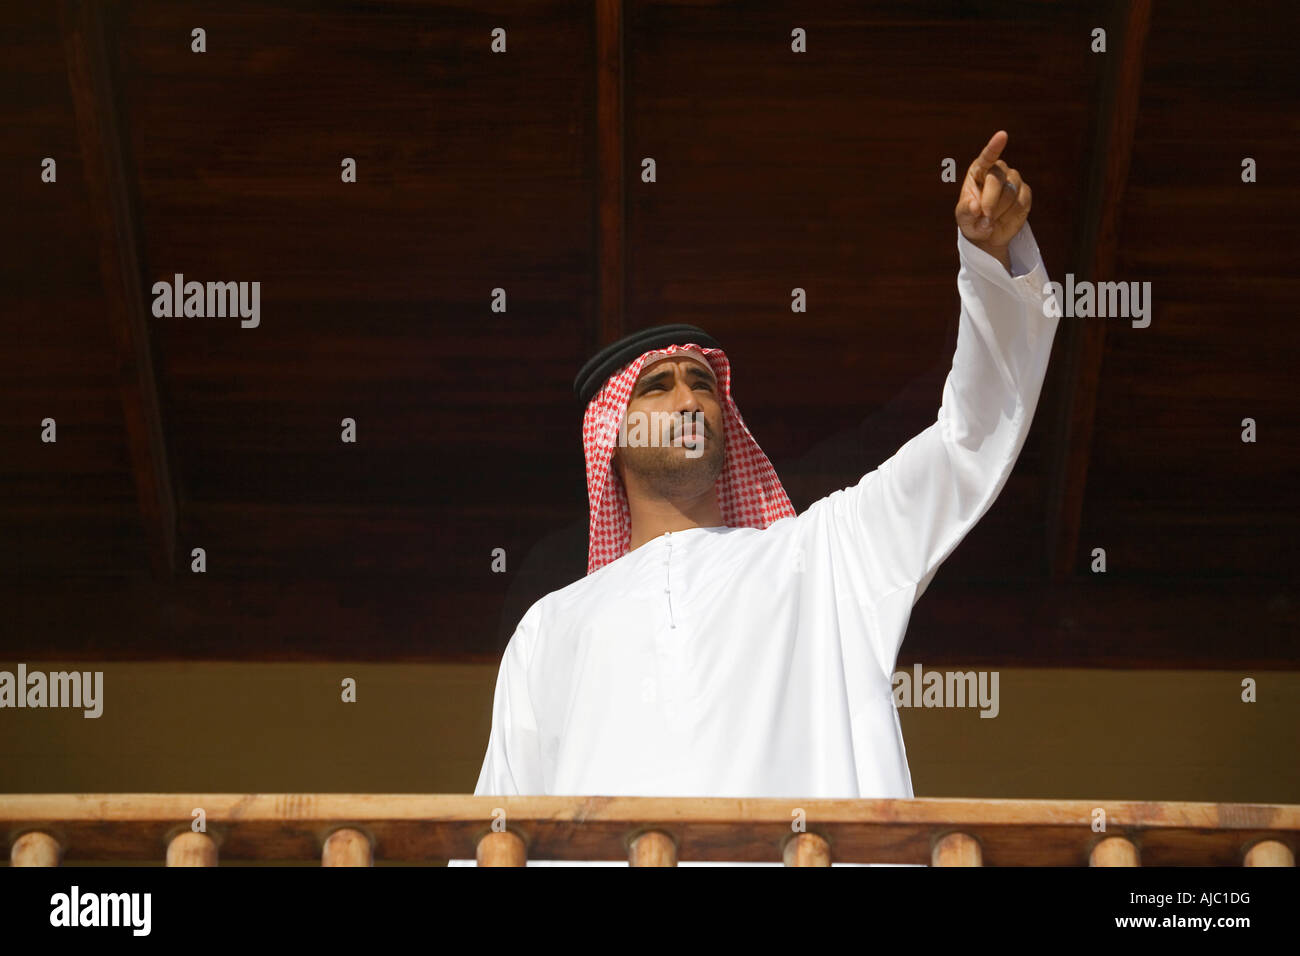 Arabische Mann winken auf einem Balkon, Low Angle View Stockfoto